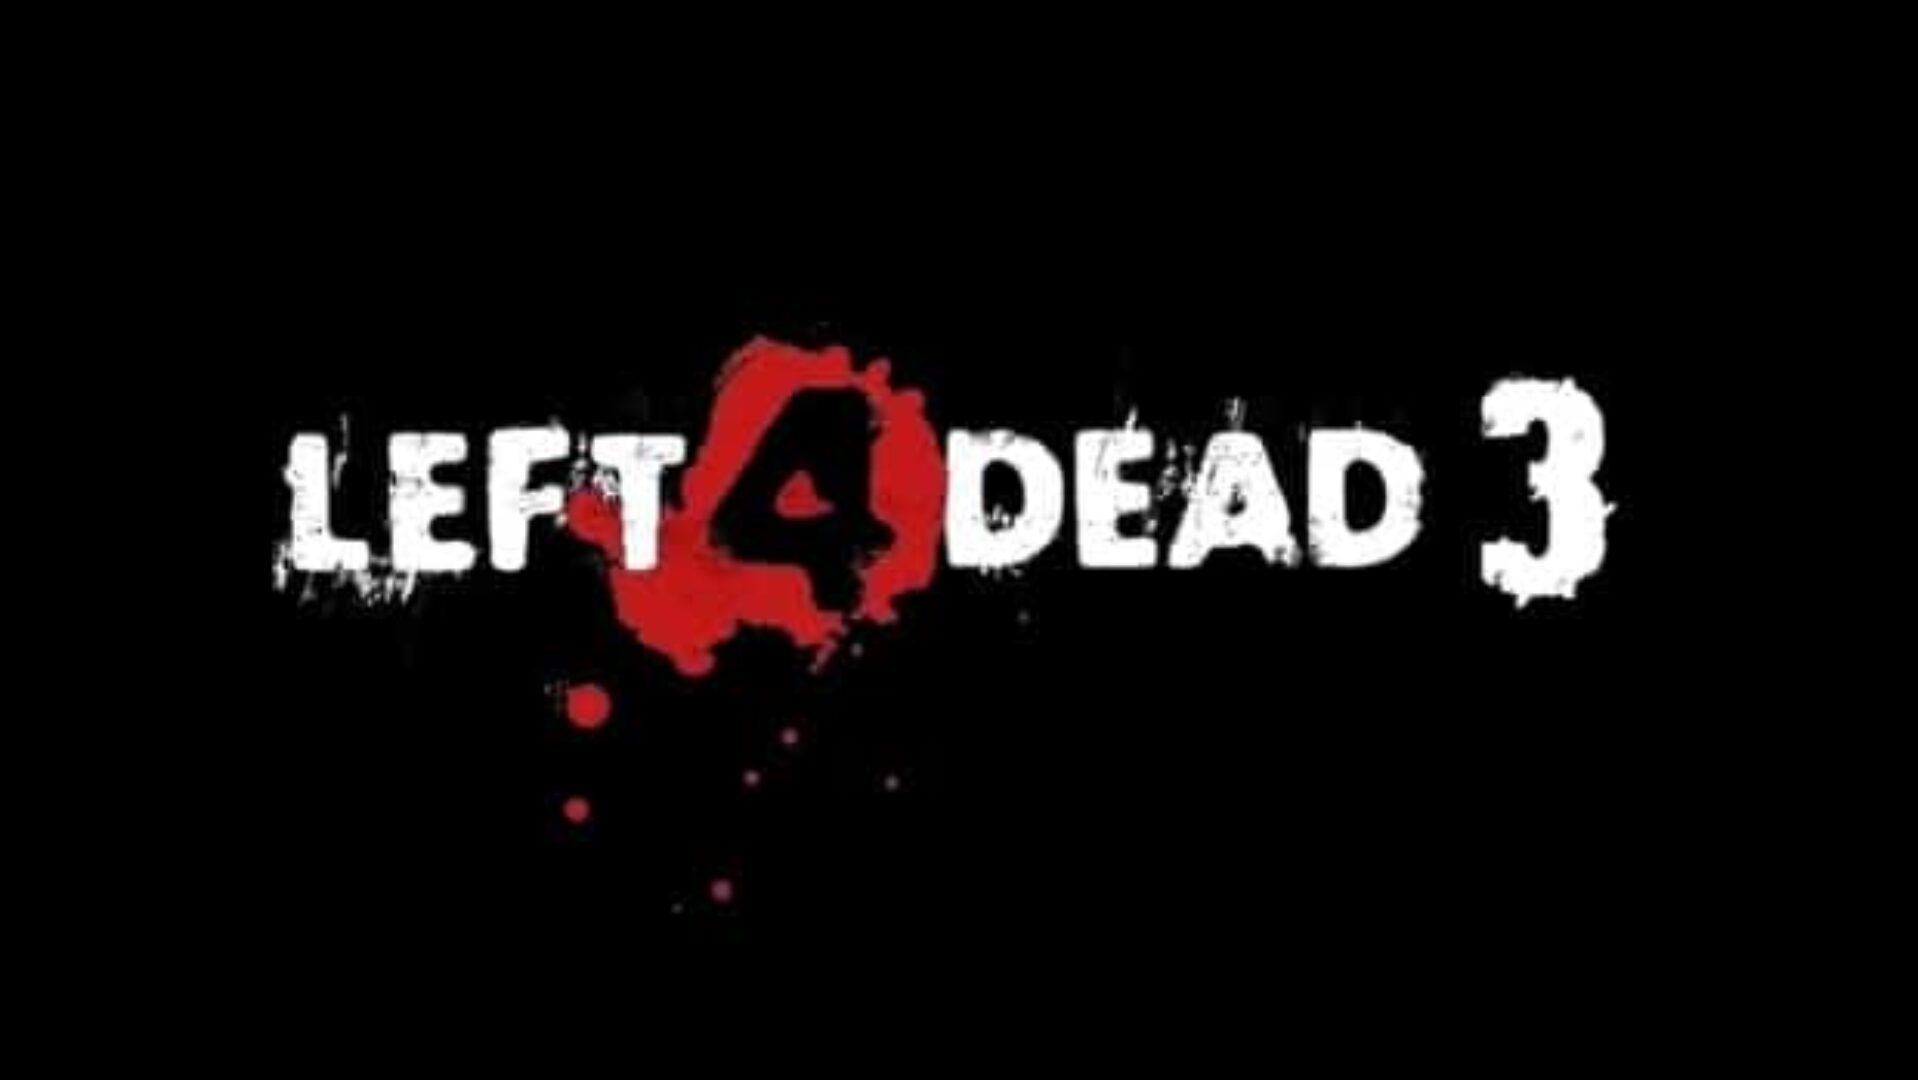 Rumor: Left 4 Dead 3 Confirmed?